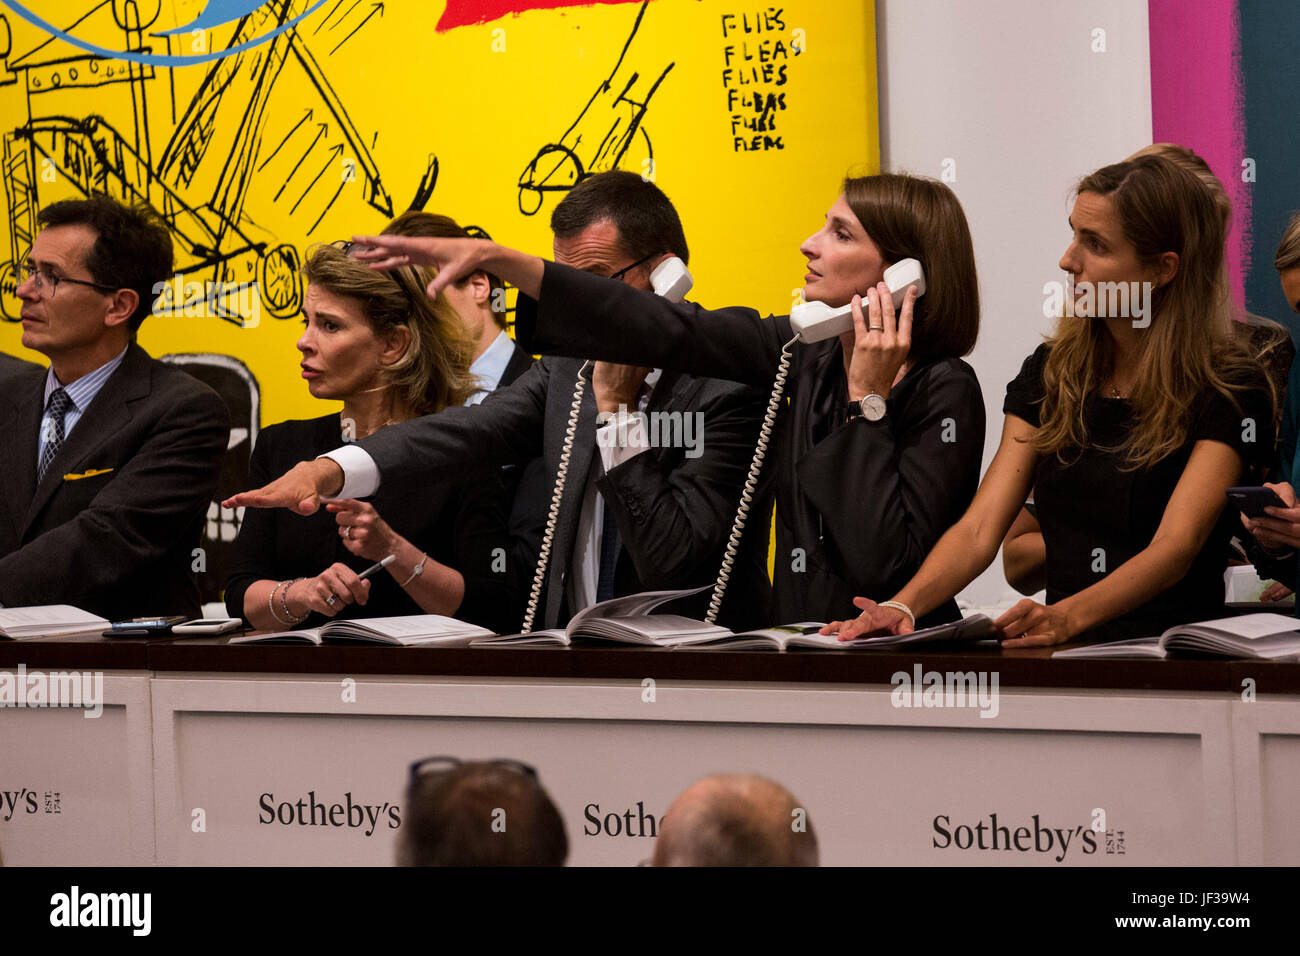 Londres, Royaume-Uni. 28 juin 2017. Sotheby's personnel téléphone les offres des cliients en face d'Andy Warhol et Jean-Michel Basquiat's, Sweet piquant, 1984-85, qui a vendu pour 4 433 750 GBP. Soirée d'art contemporain de Sotheby's Vente aux enchères a lieu à leurs nouveaux locaux de Bond Street. Banque D'Images